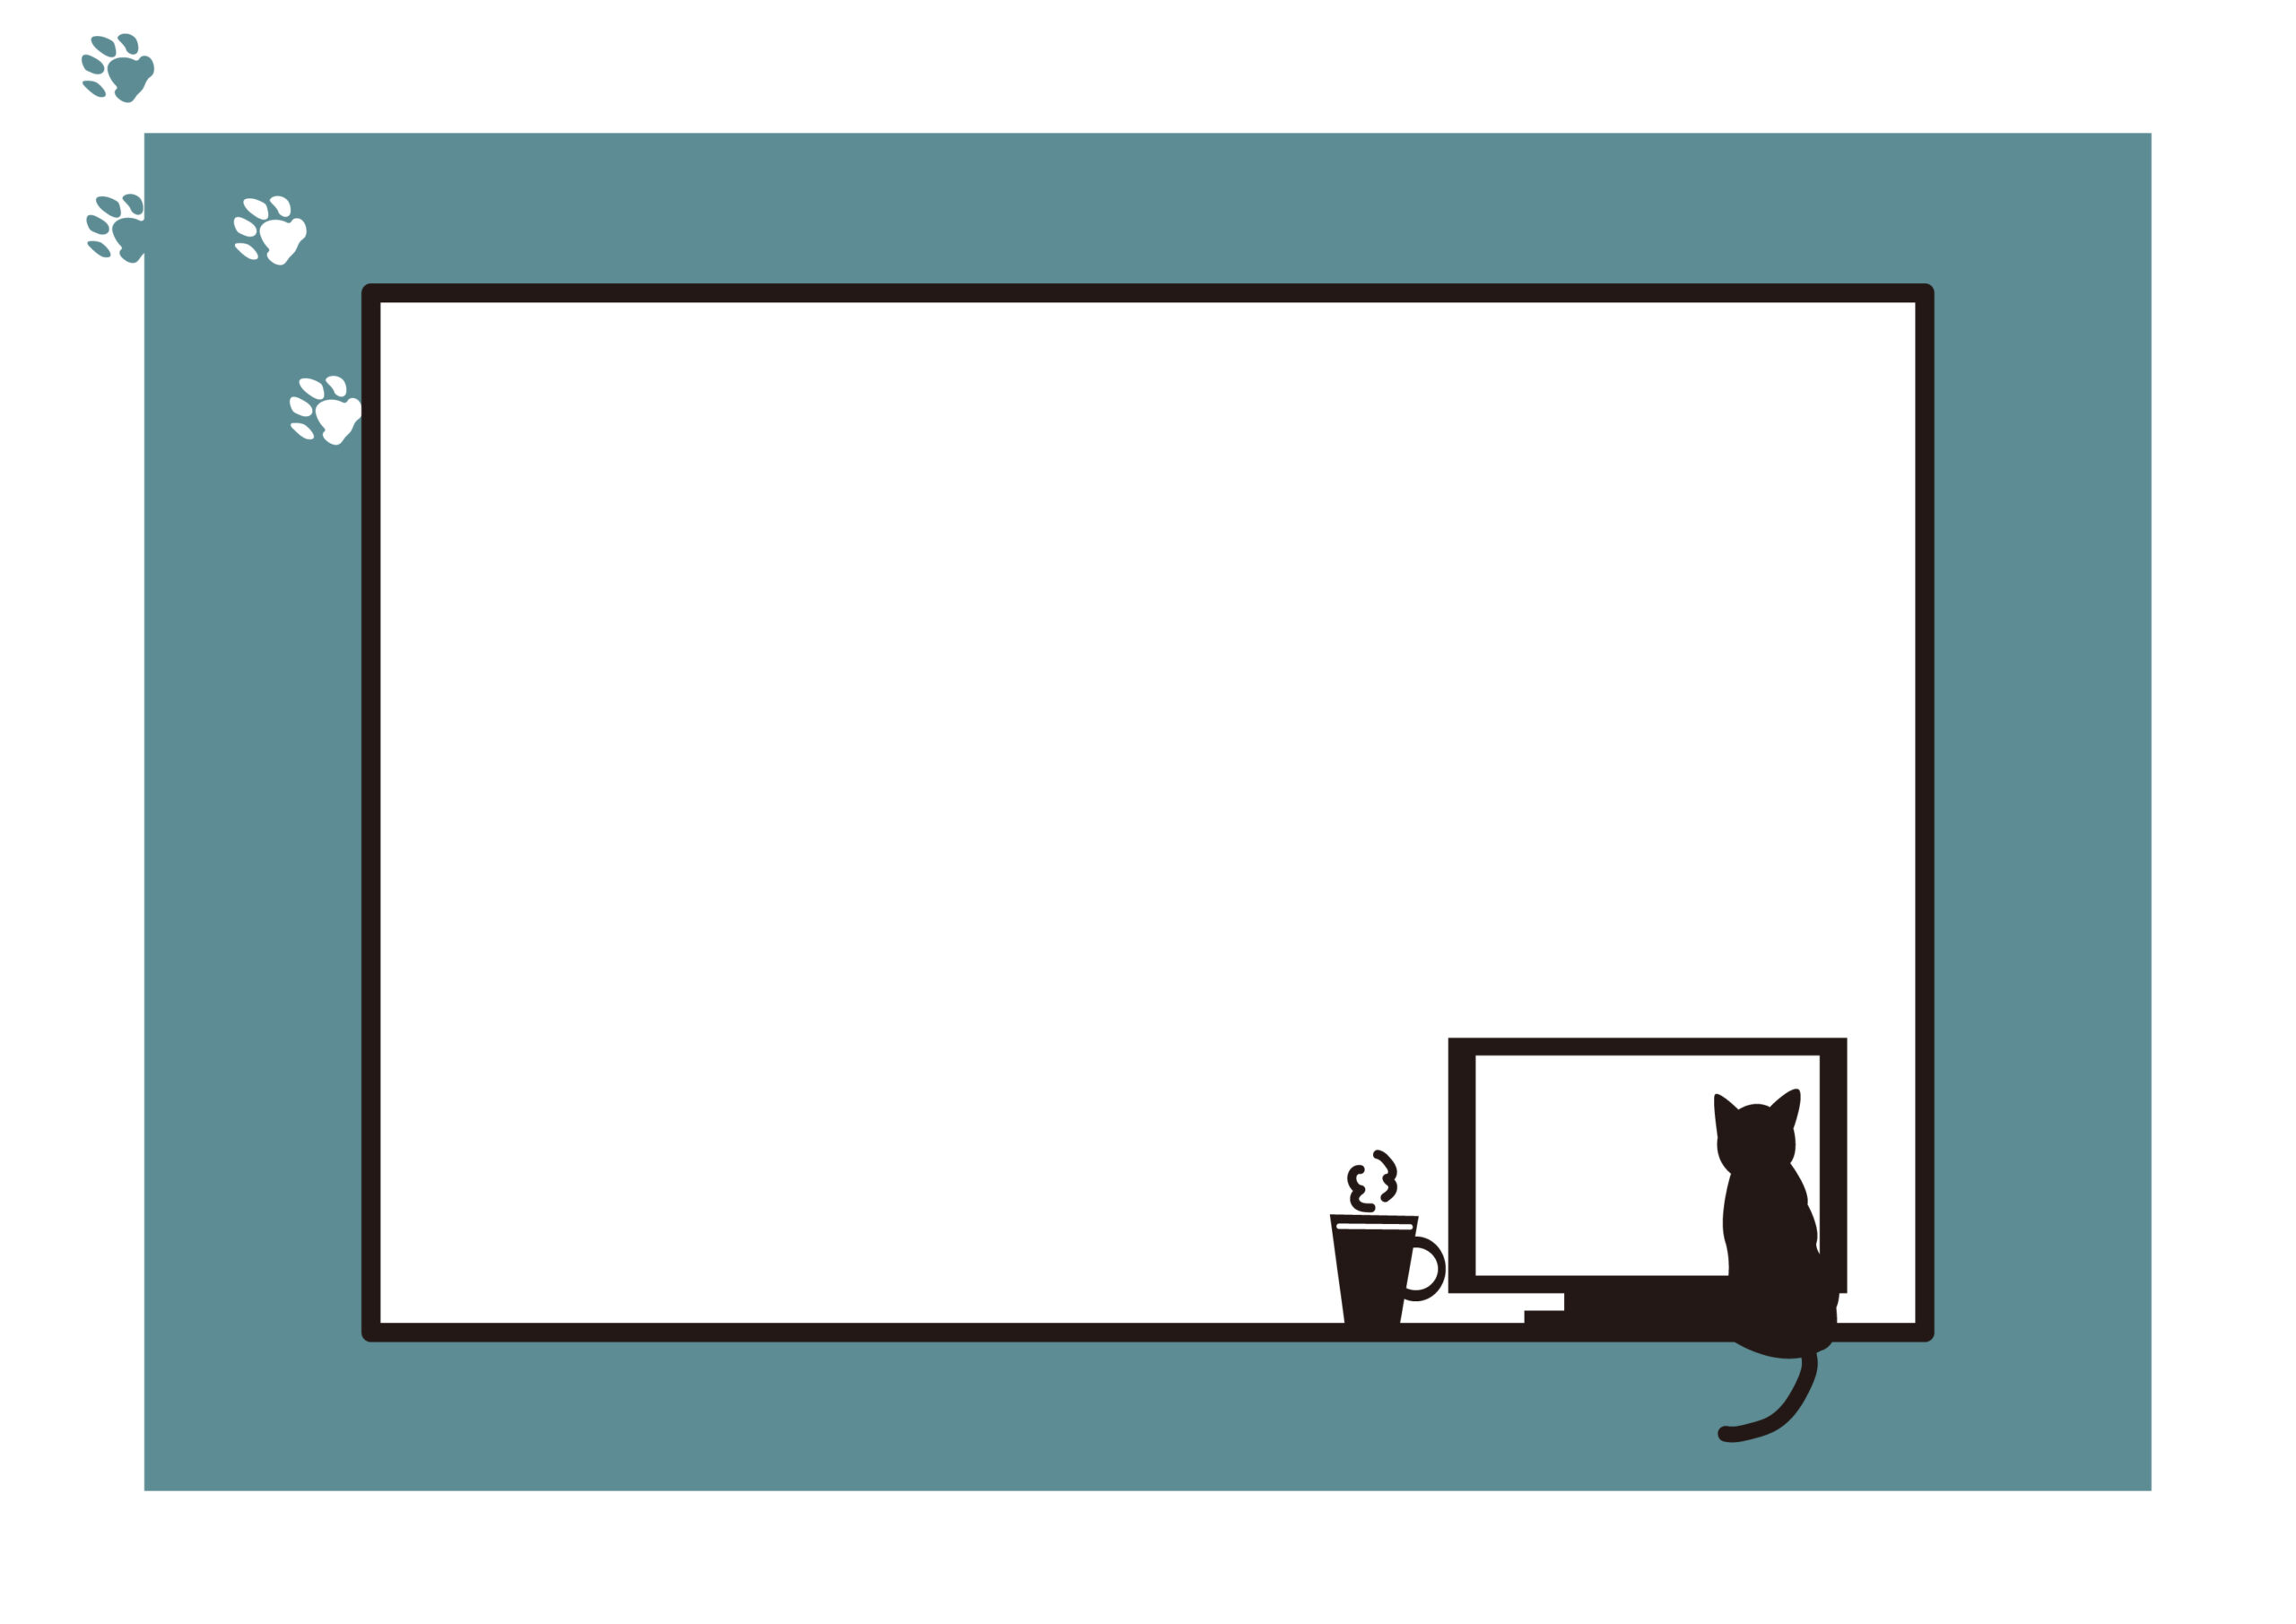 猫ちゃんがパソコンの画面を眺めている姿のイラスト入りとなり、パソコン教室の臨時休業のお知らせの張り紙などに使いやすいかわいいフレーム素材になります。枠の中にお休みの連絡や案内を手書きやパソコンで記入し作成してください。ダウンロード：